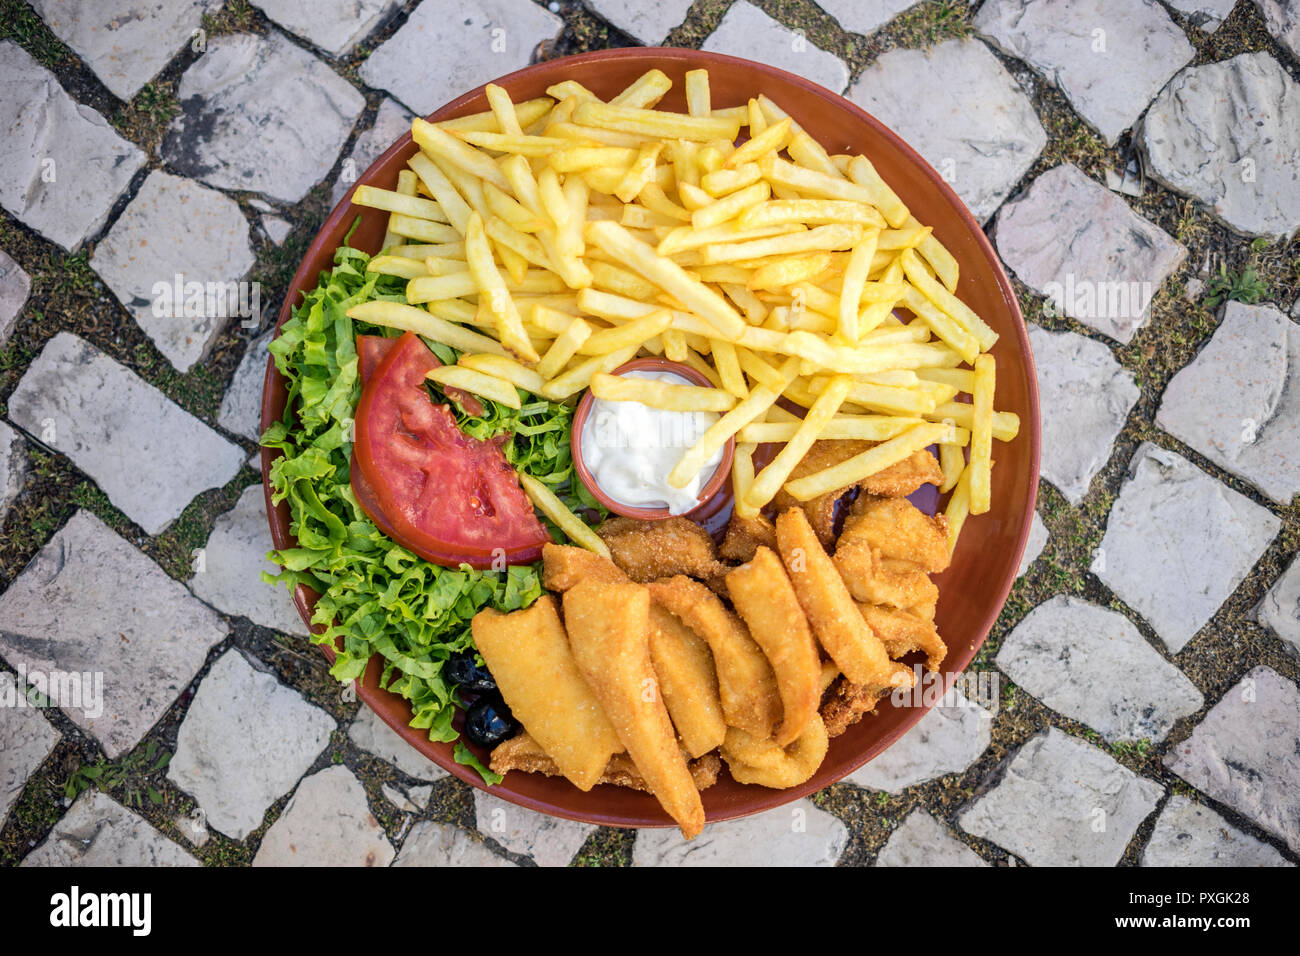 Berühmte choco Frito von Setubal. Und Tintenfisch gebraten mit Pommes Frites und Salat serviert. Stockfoto